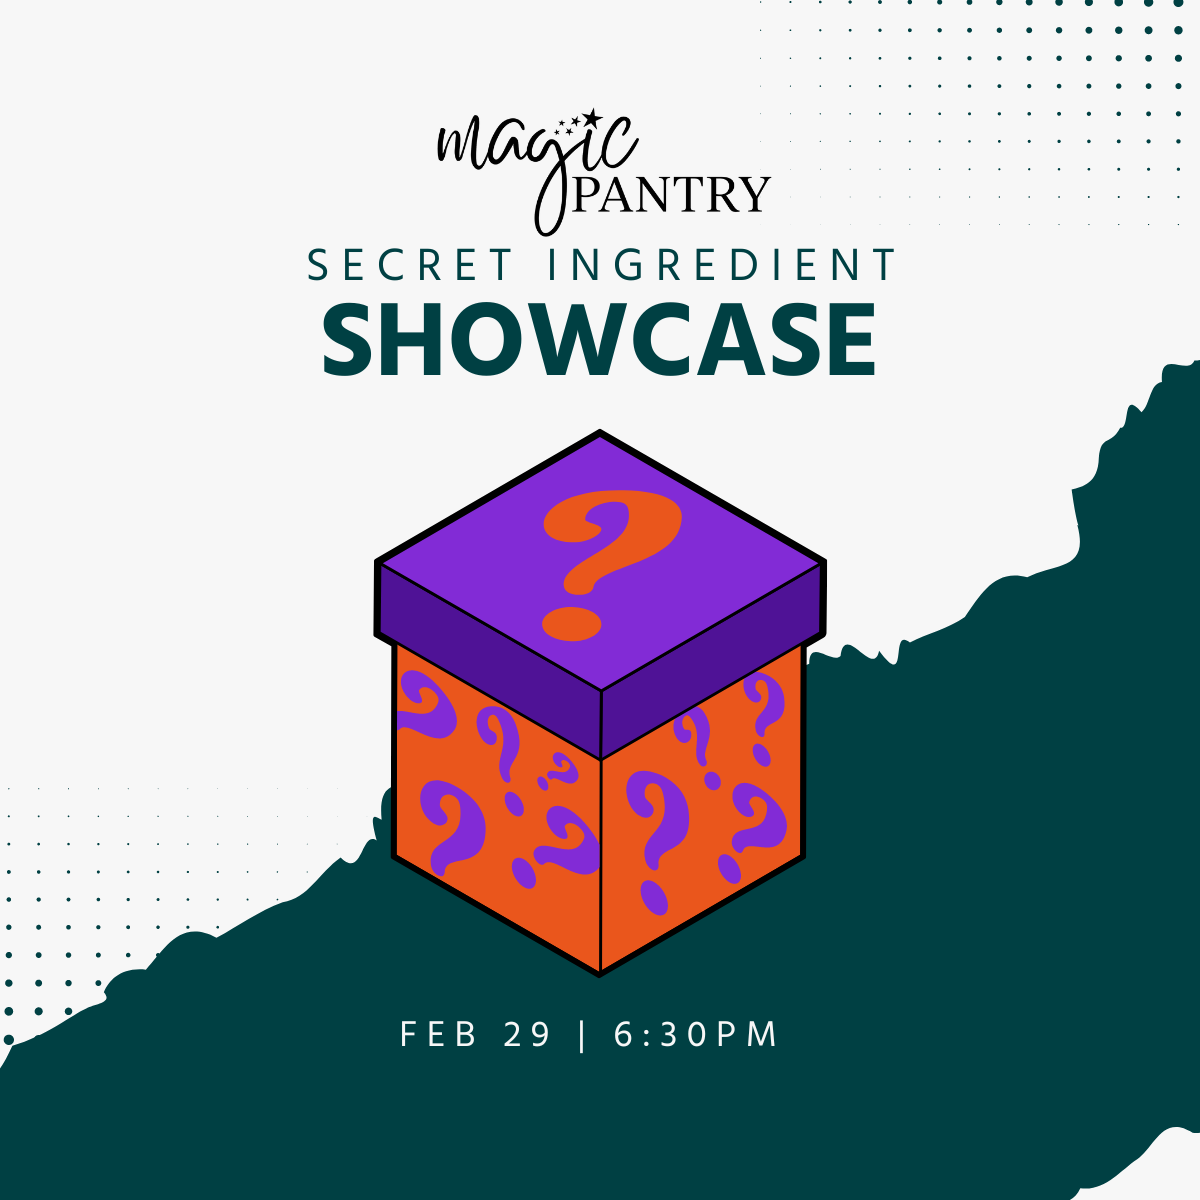 Magic Pantry Showcase: Secret Ingredient  | Feb 29